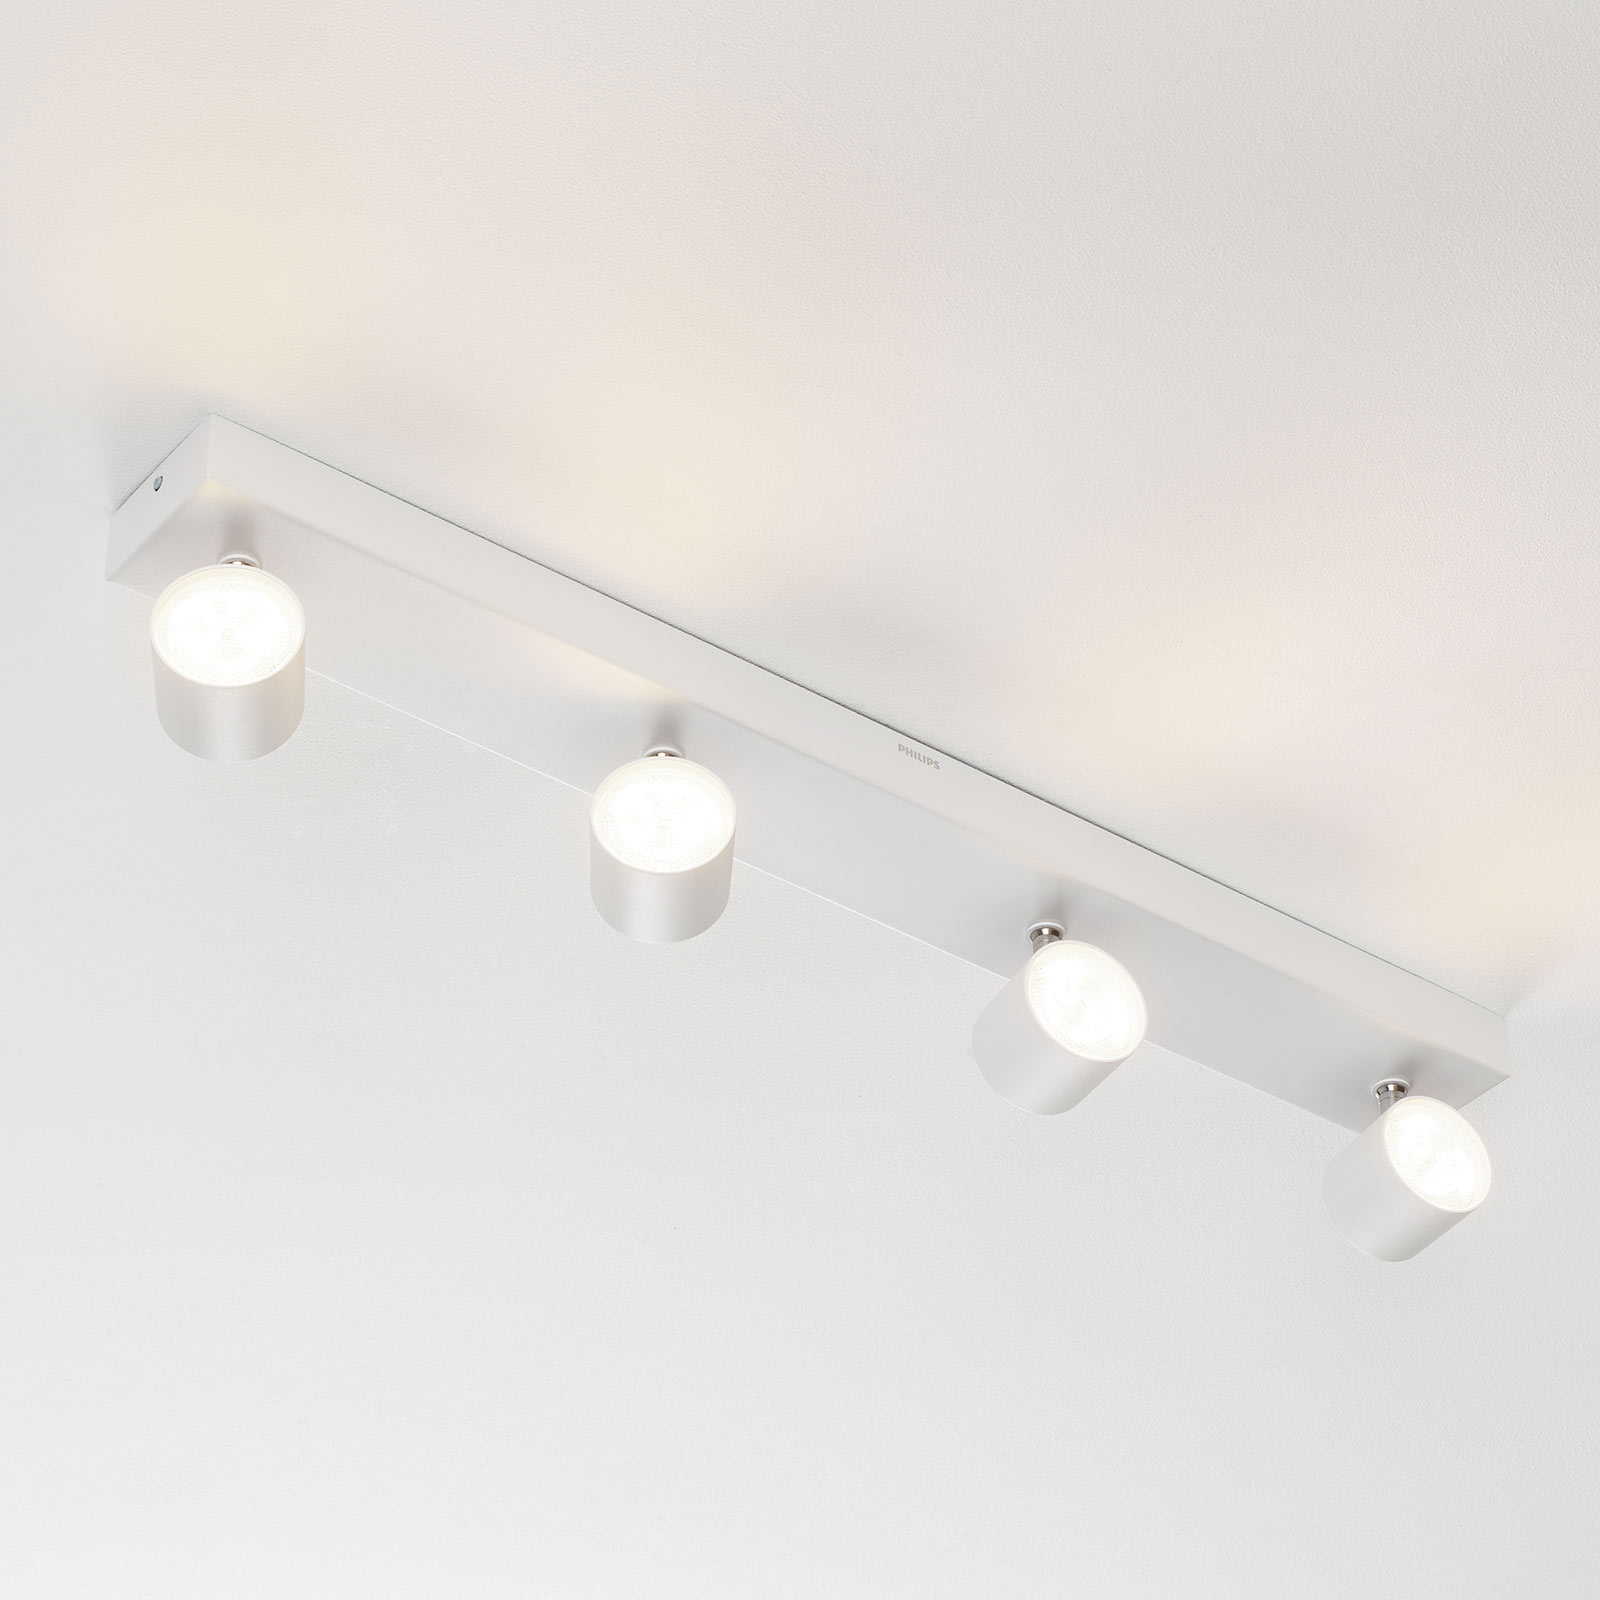 4-lamps LED plafondspot wit, warmglow | Lampen24.nl